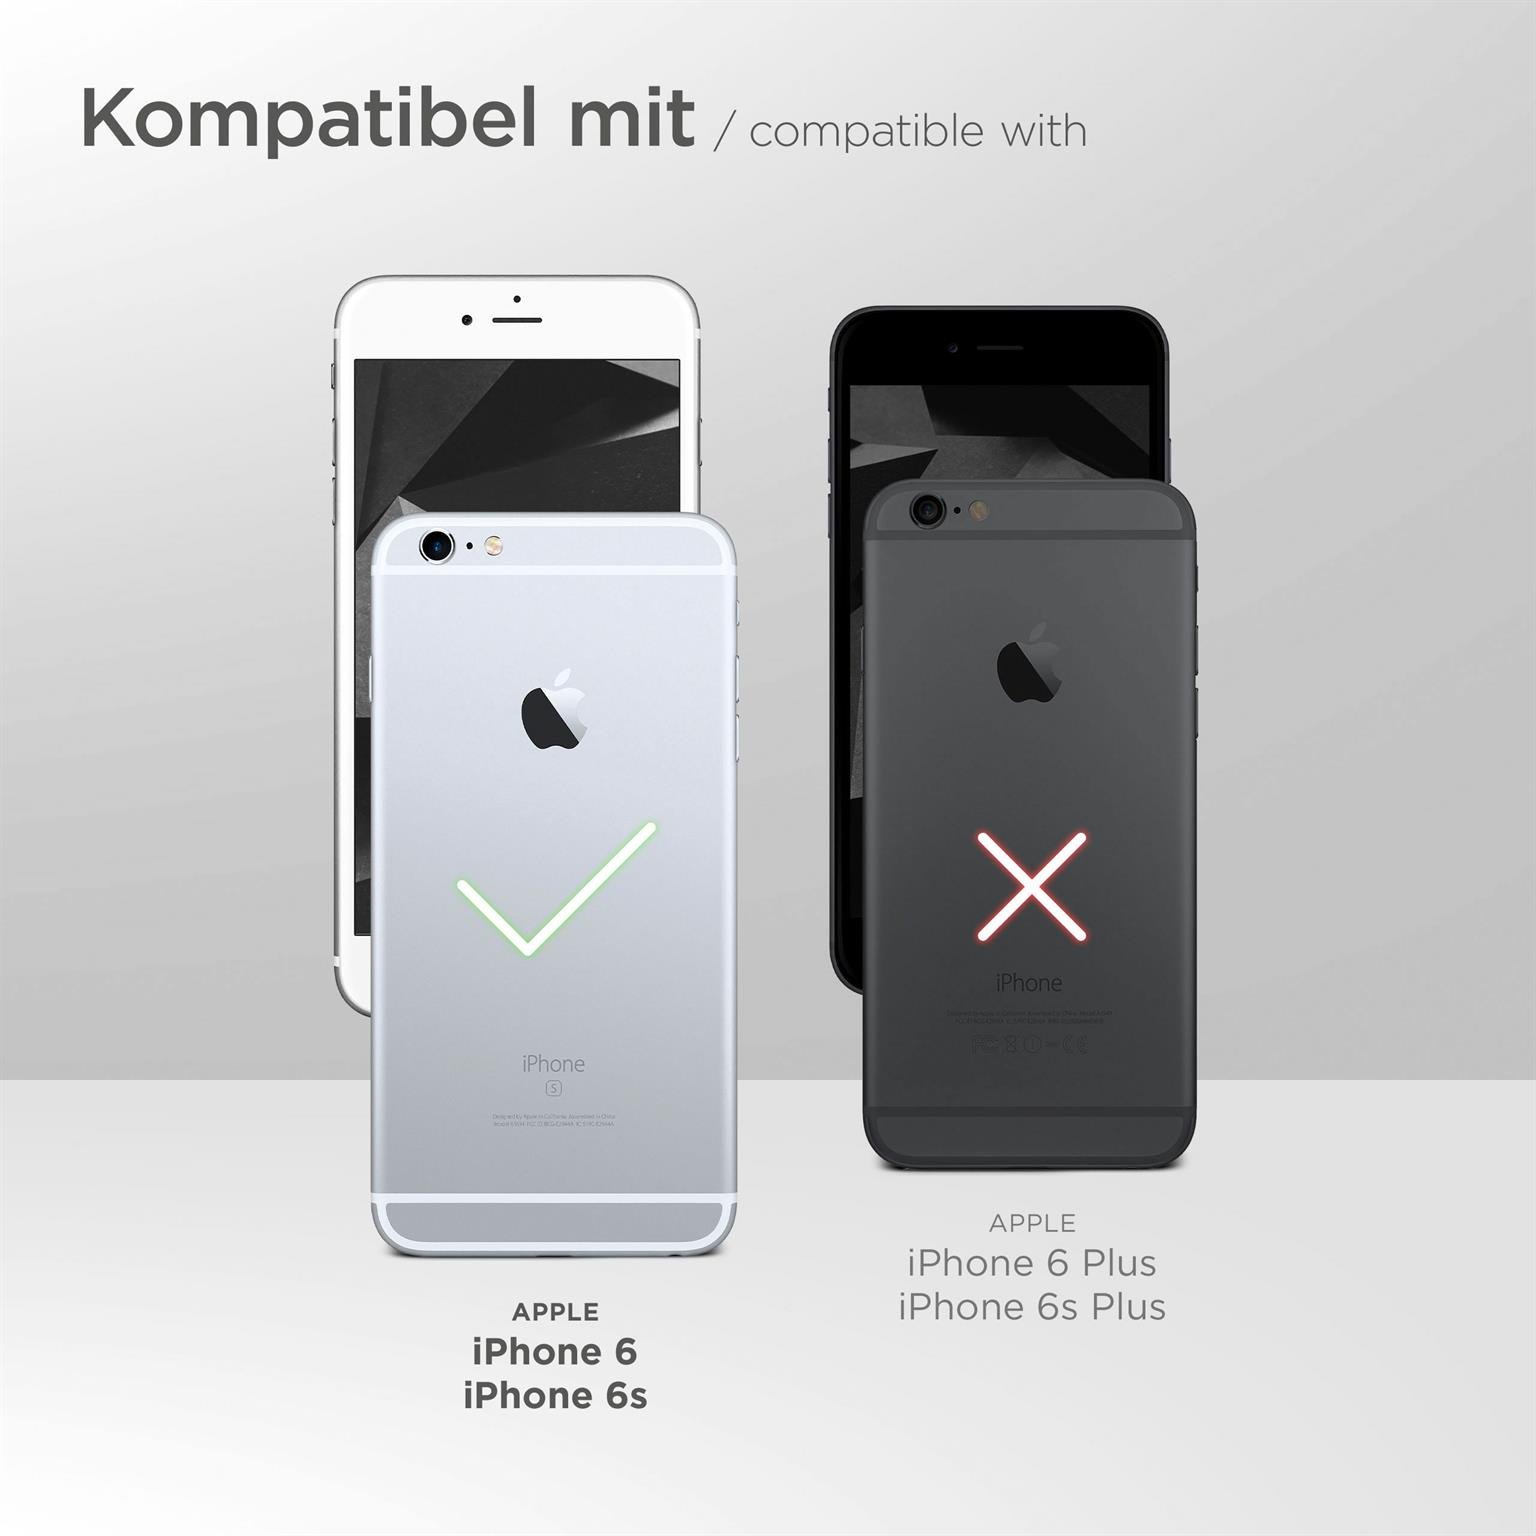 moex Flip Case für Apple iPhone 6 – PU Lederhülle mit 360 Grad Schutz, klappbar